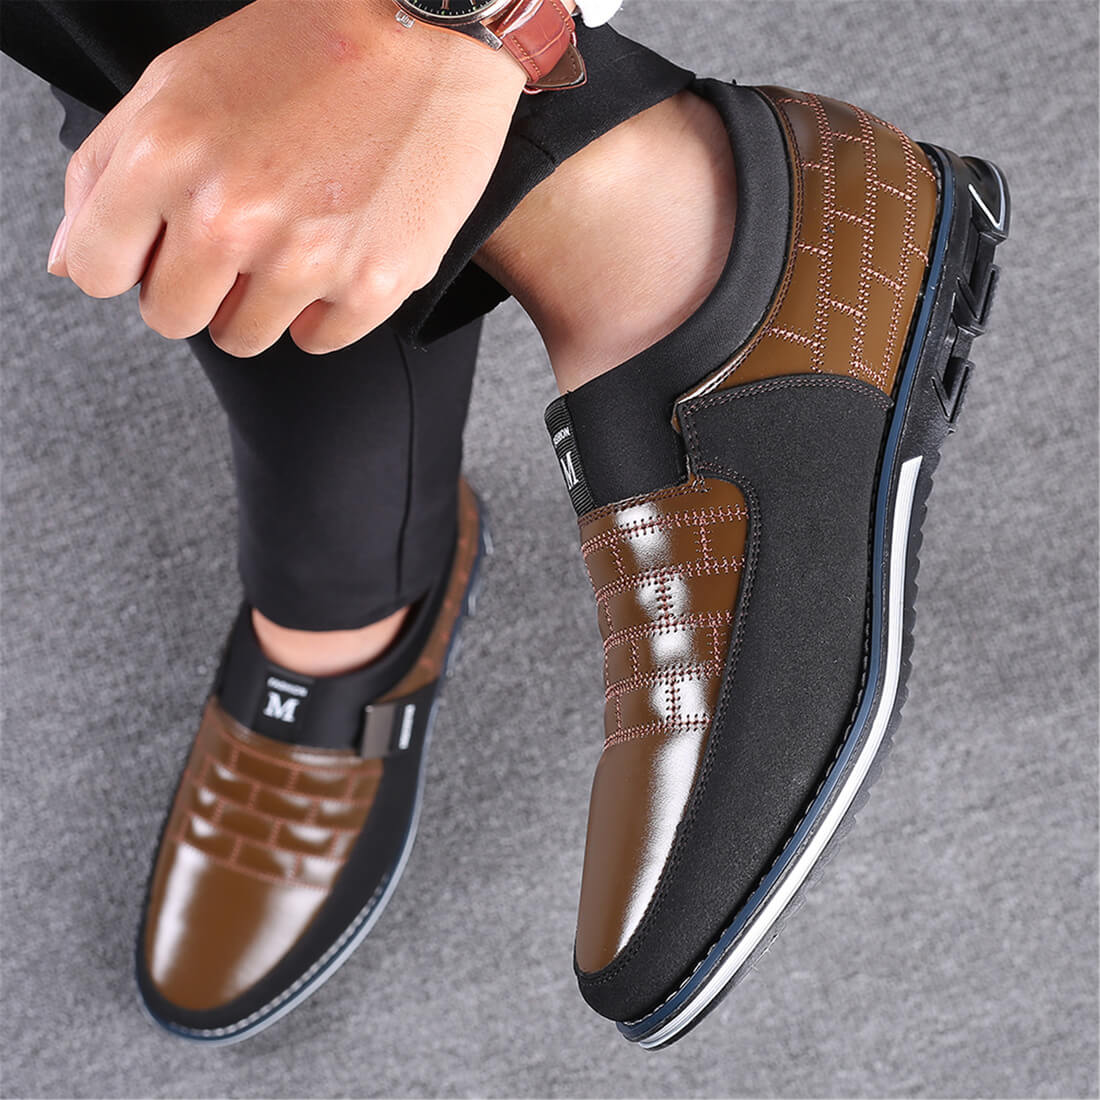 Slip-On Orthopedic Leather Shoes – GatsbyShoes